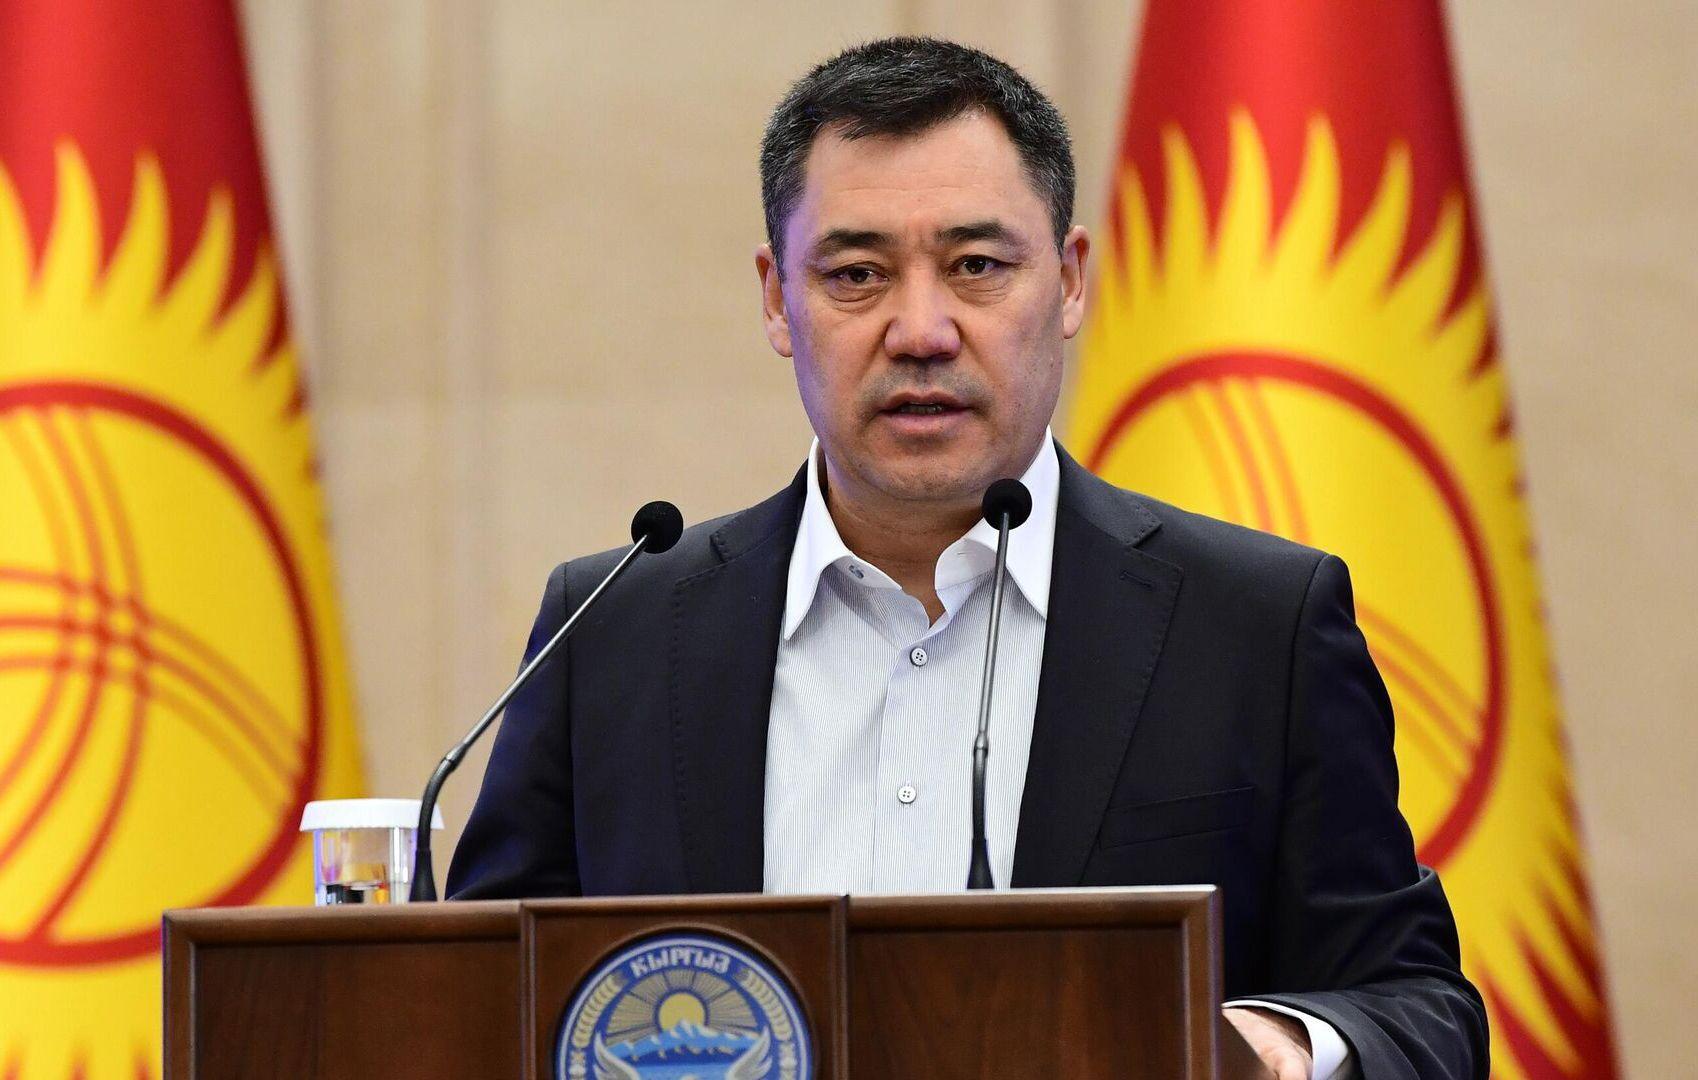 Кыргызстан планирует погасить внешний долг к 2035 году